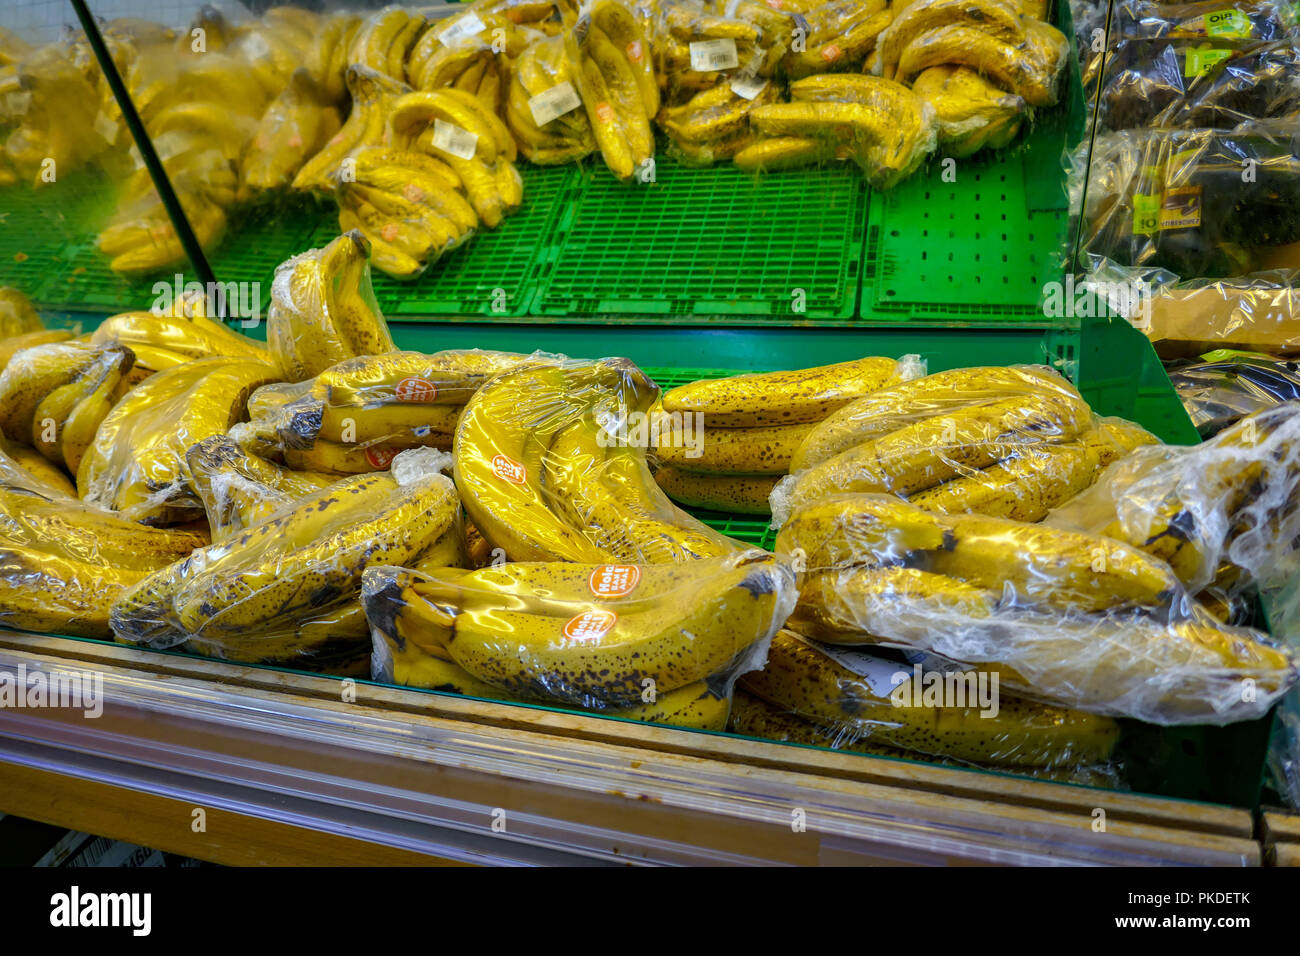 Les bananes, les fruits présentés en plastique dans un supermarché français Banque D'Images